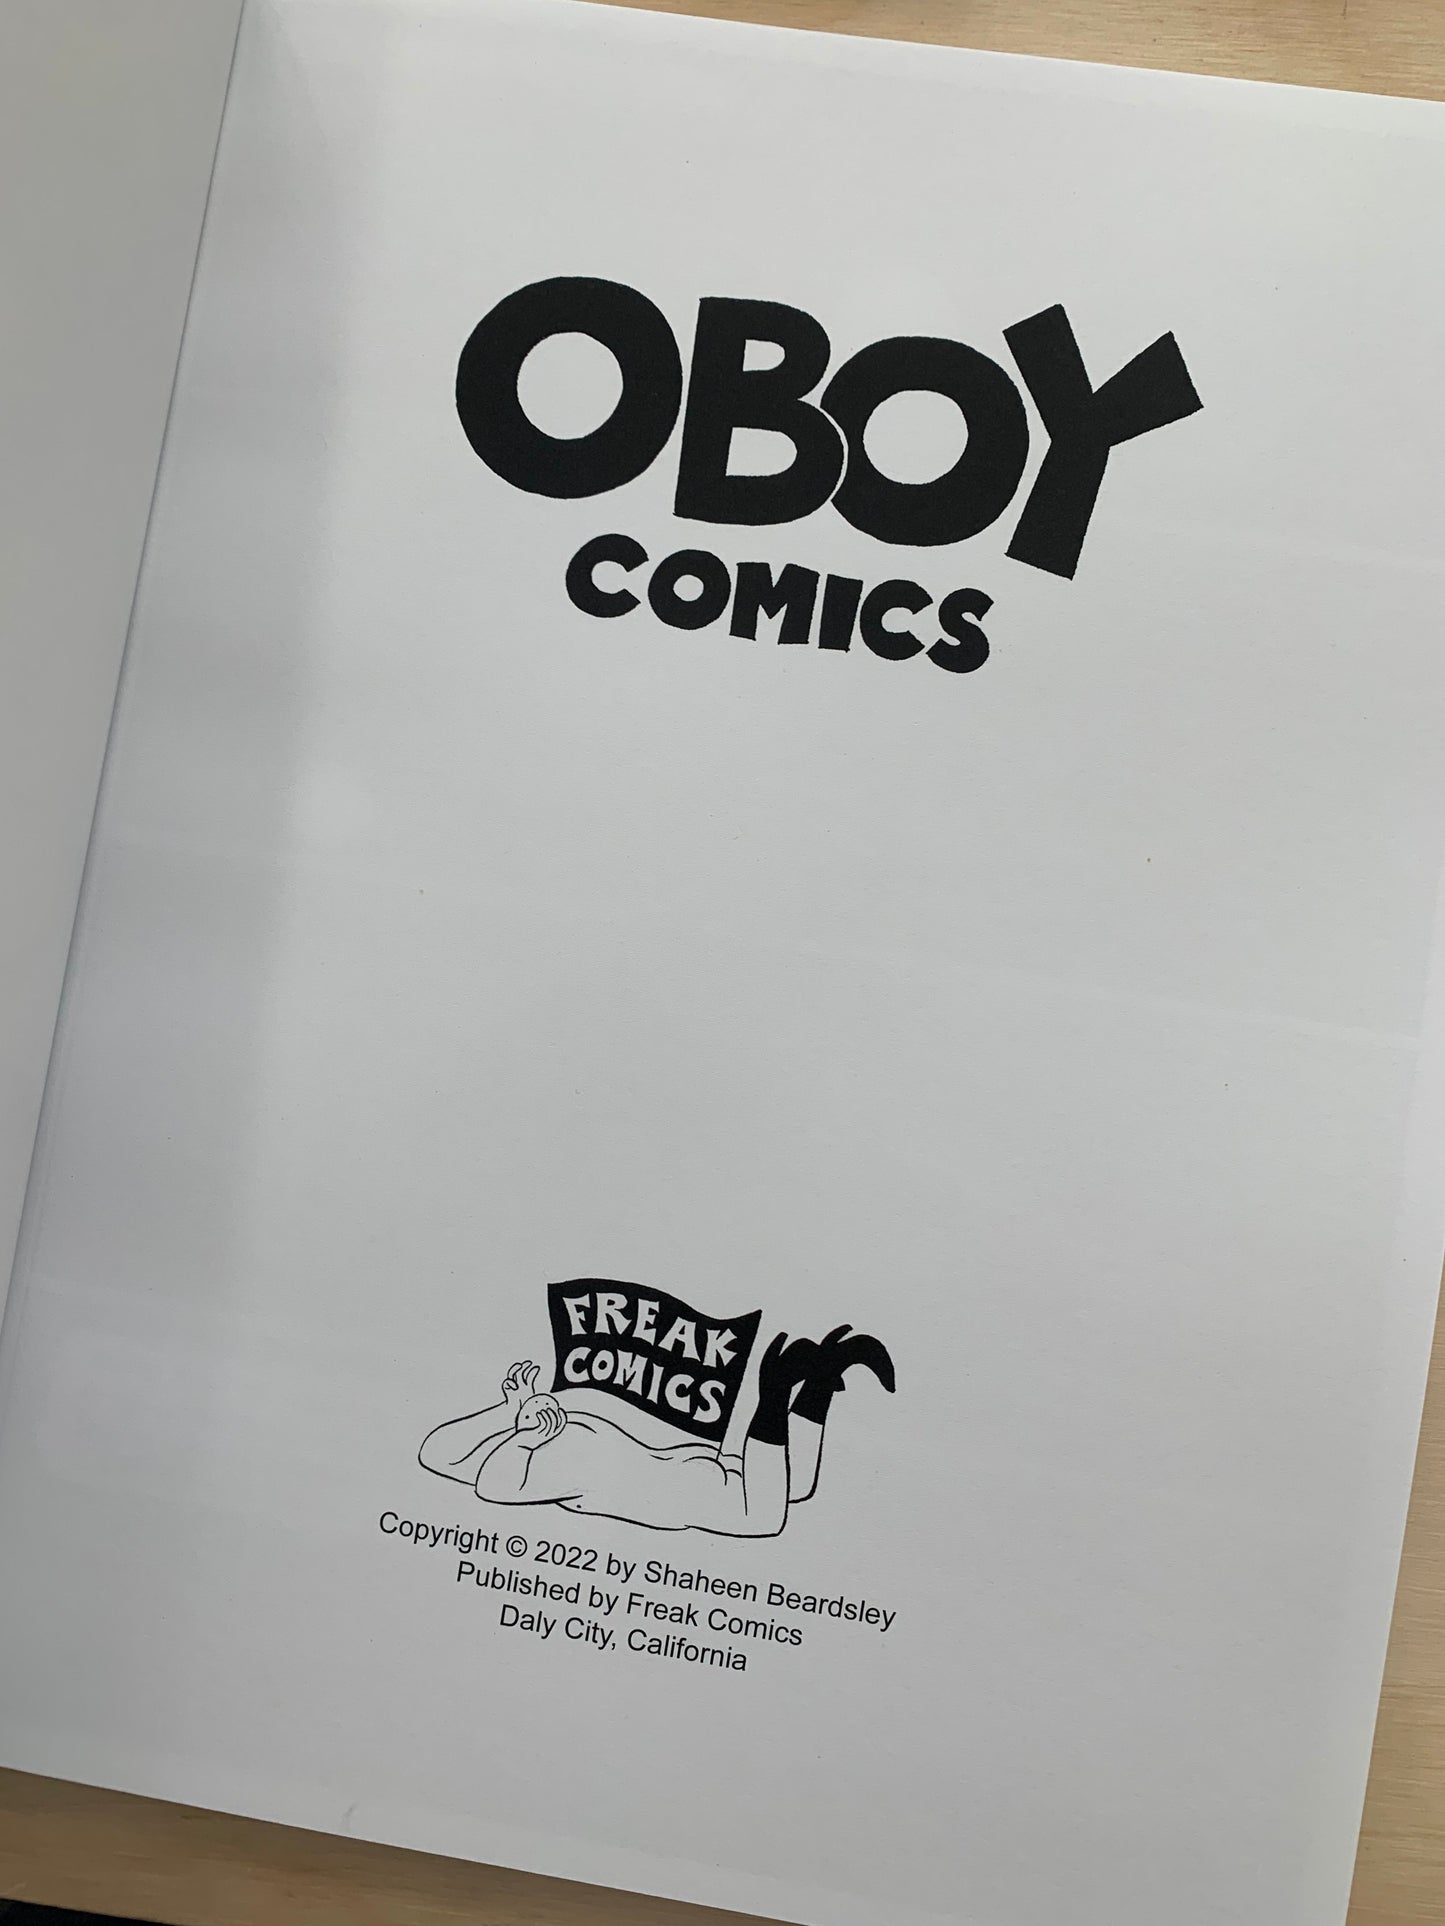 Oboy Comics